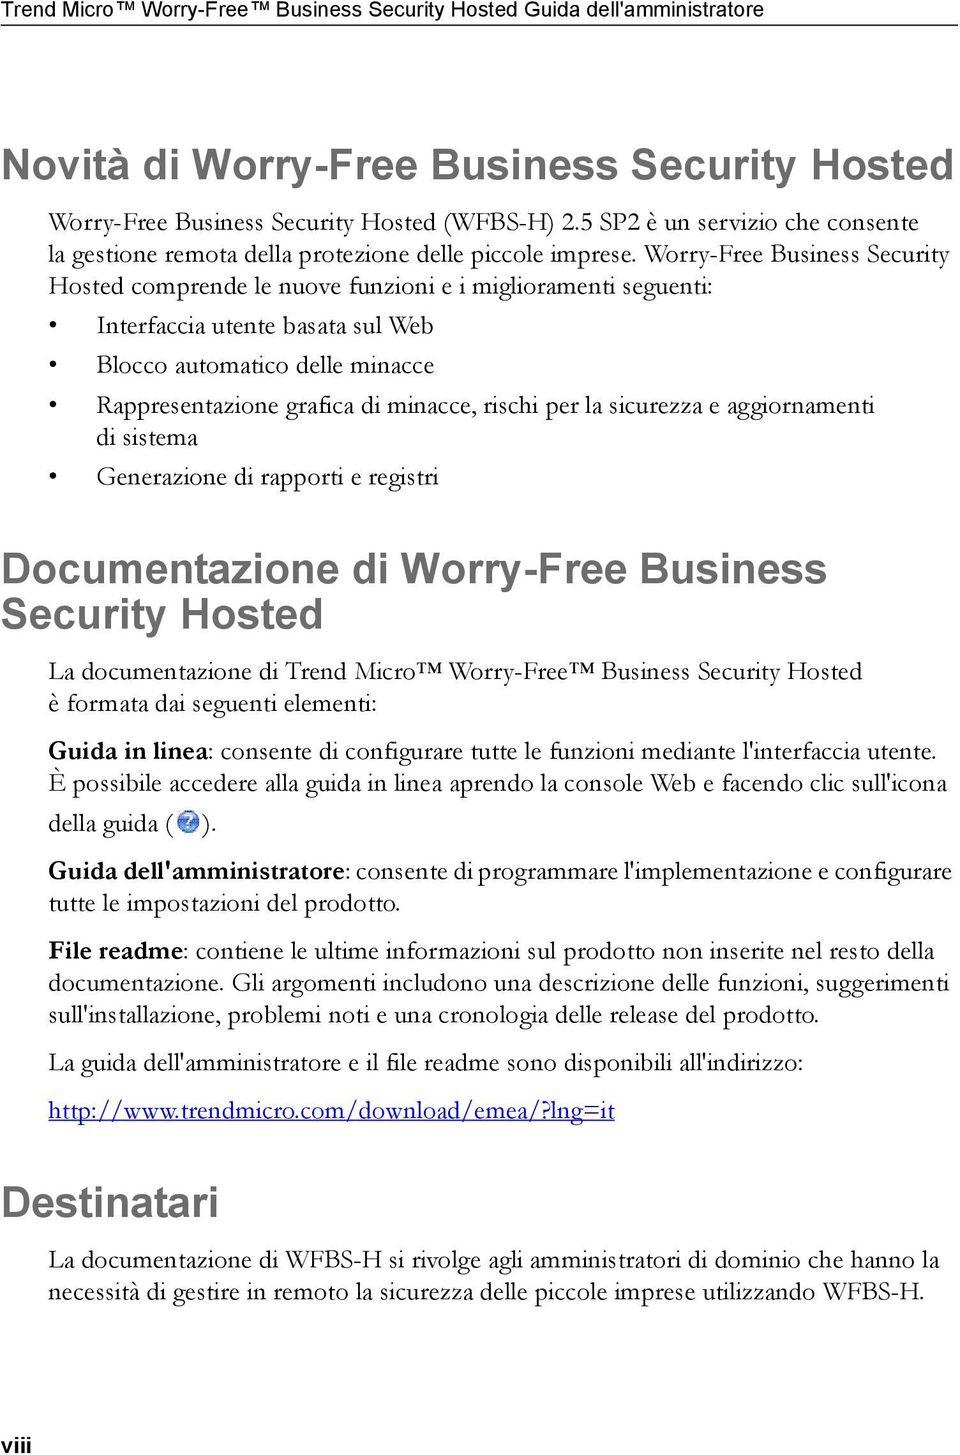 Worry-Free Business Security Hosted comprende le nuove funzioni e i miglioramenti seguenti: Interfaccia utente basata sul Web Blocco automatico delle minacce Rappresentazione grafica di minacce,